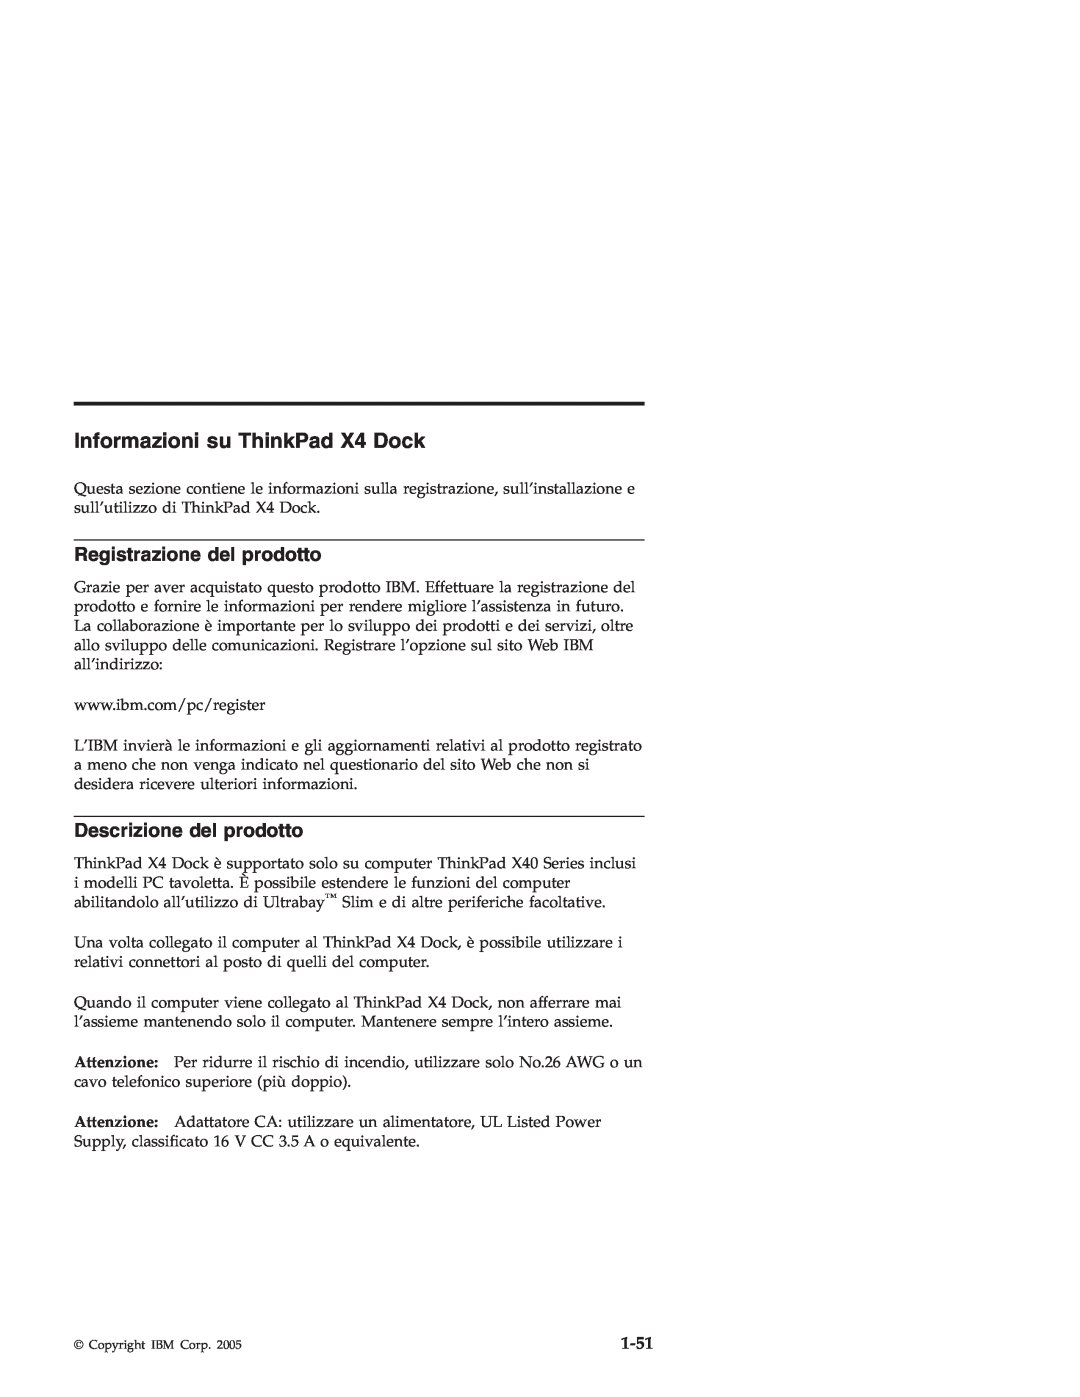 IBM manual Informazioni su ThinkPad X4 Dock, Registrazione del prodotto, Descrizione del prodotto, 1-51 